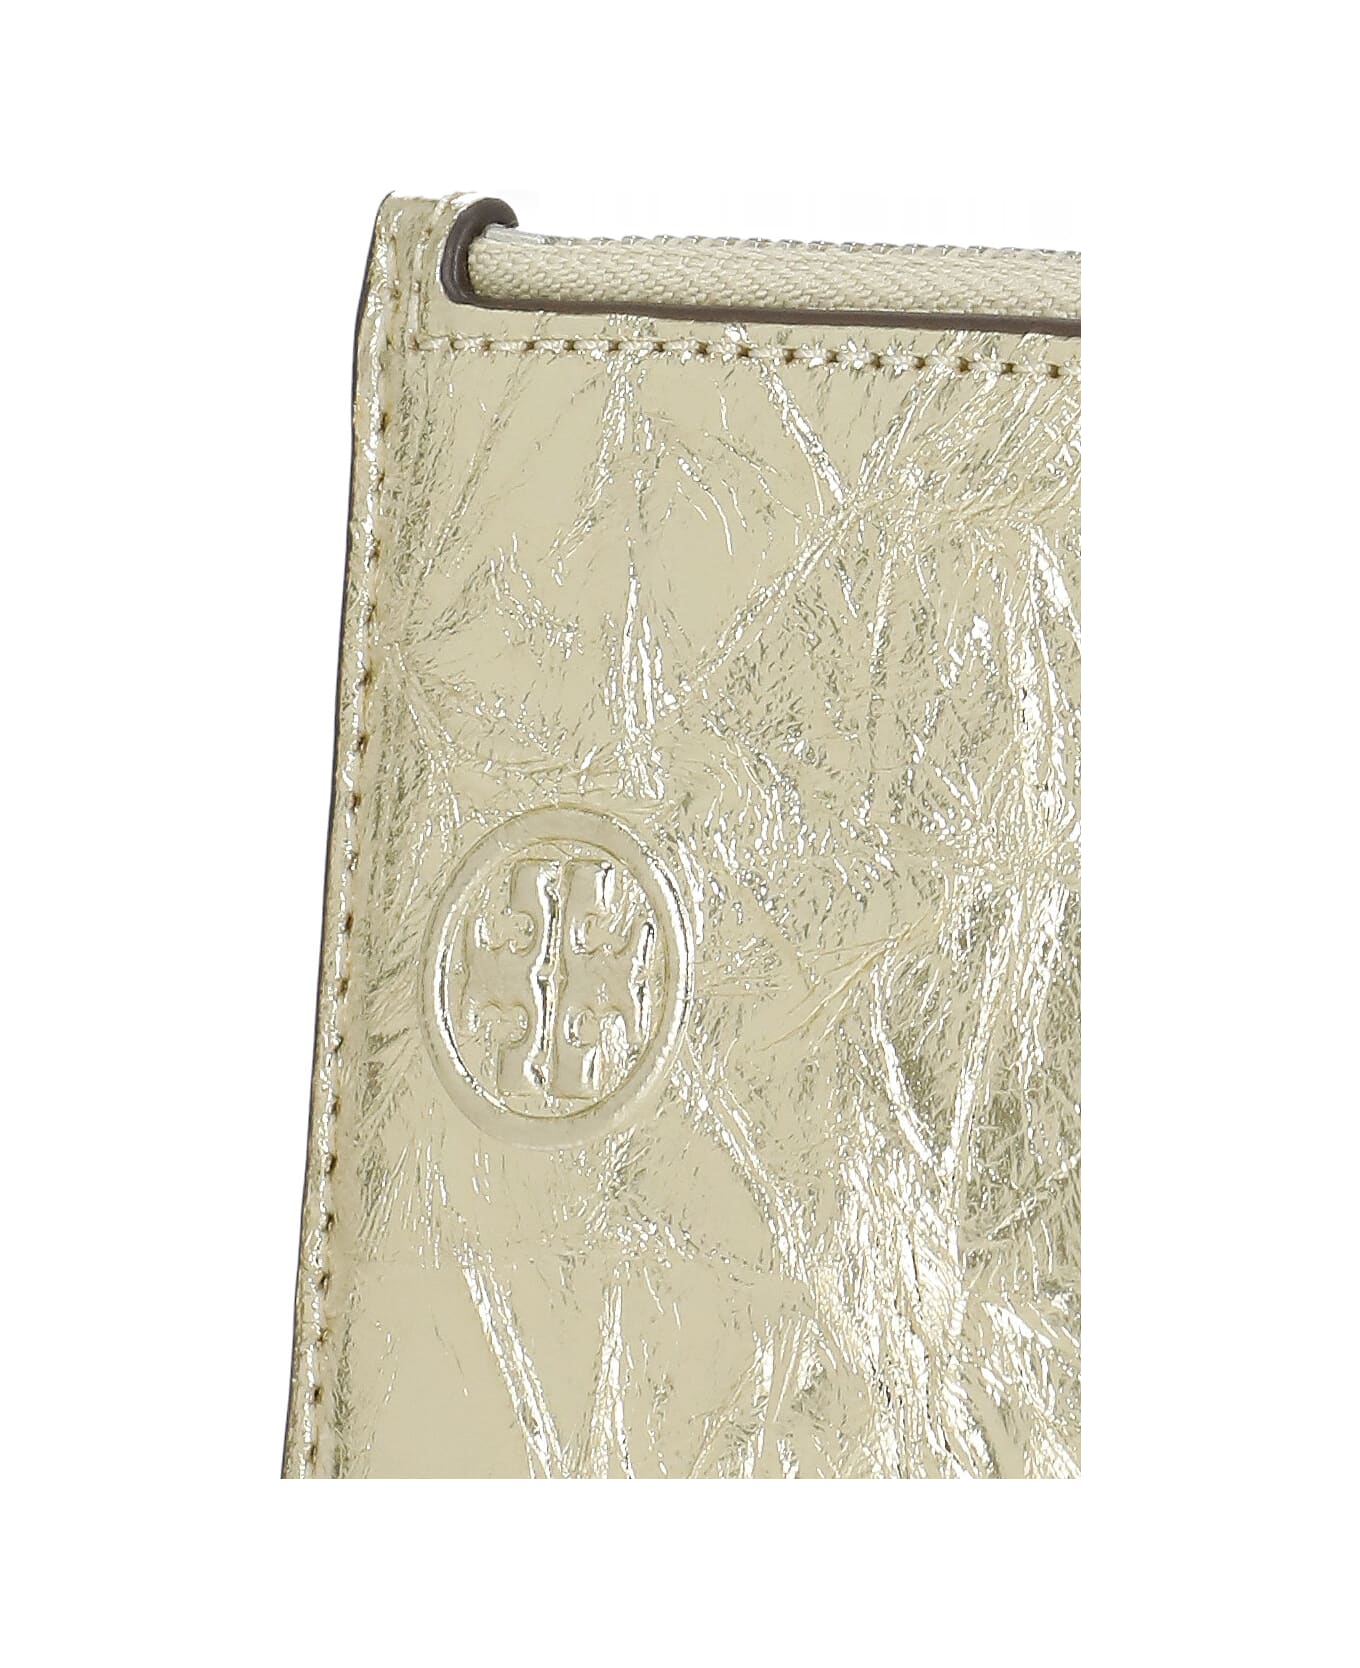 Tory Burch Fleming Metallic Card Holder - Golden 財布